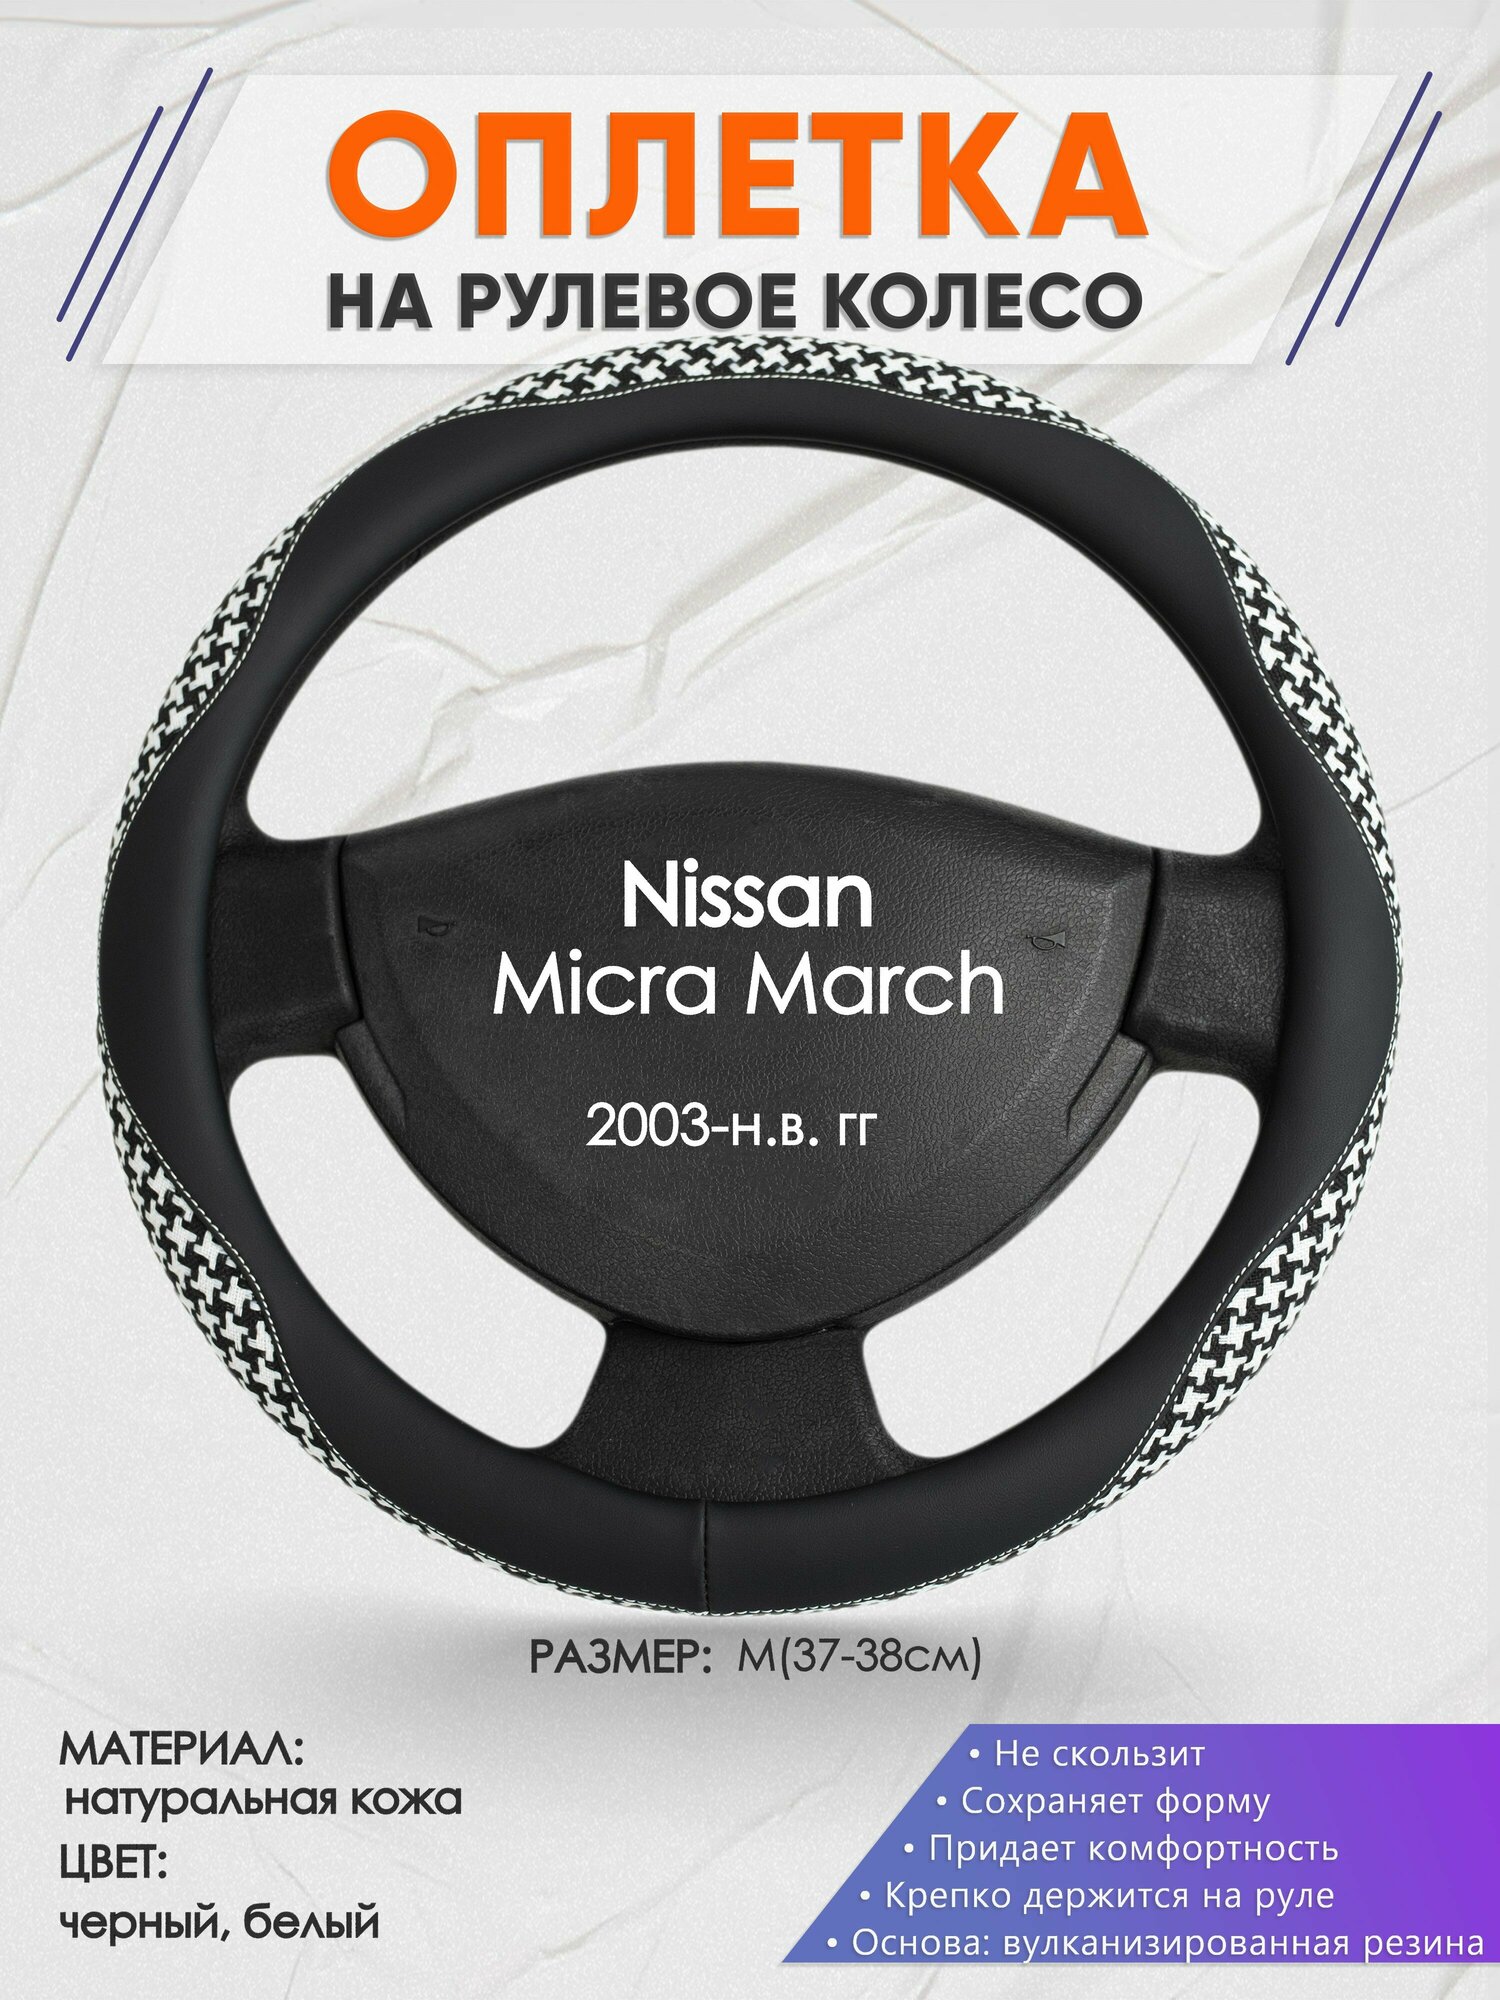 Оплетка на руль для Nissan Micra March(Ниссан Микра) 2003-н. в, M(37-38см), Натуральная кожа 21